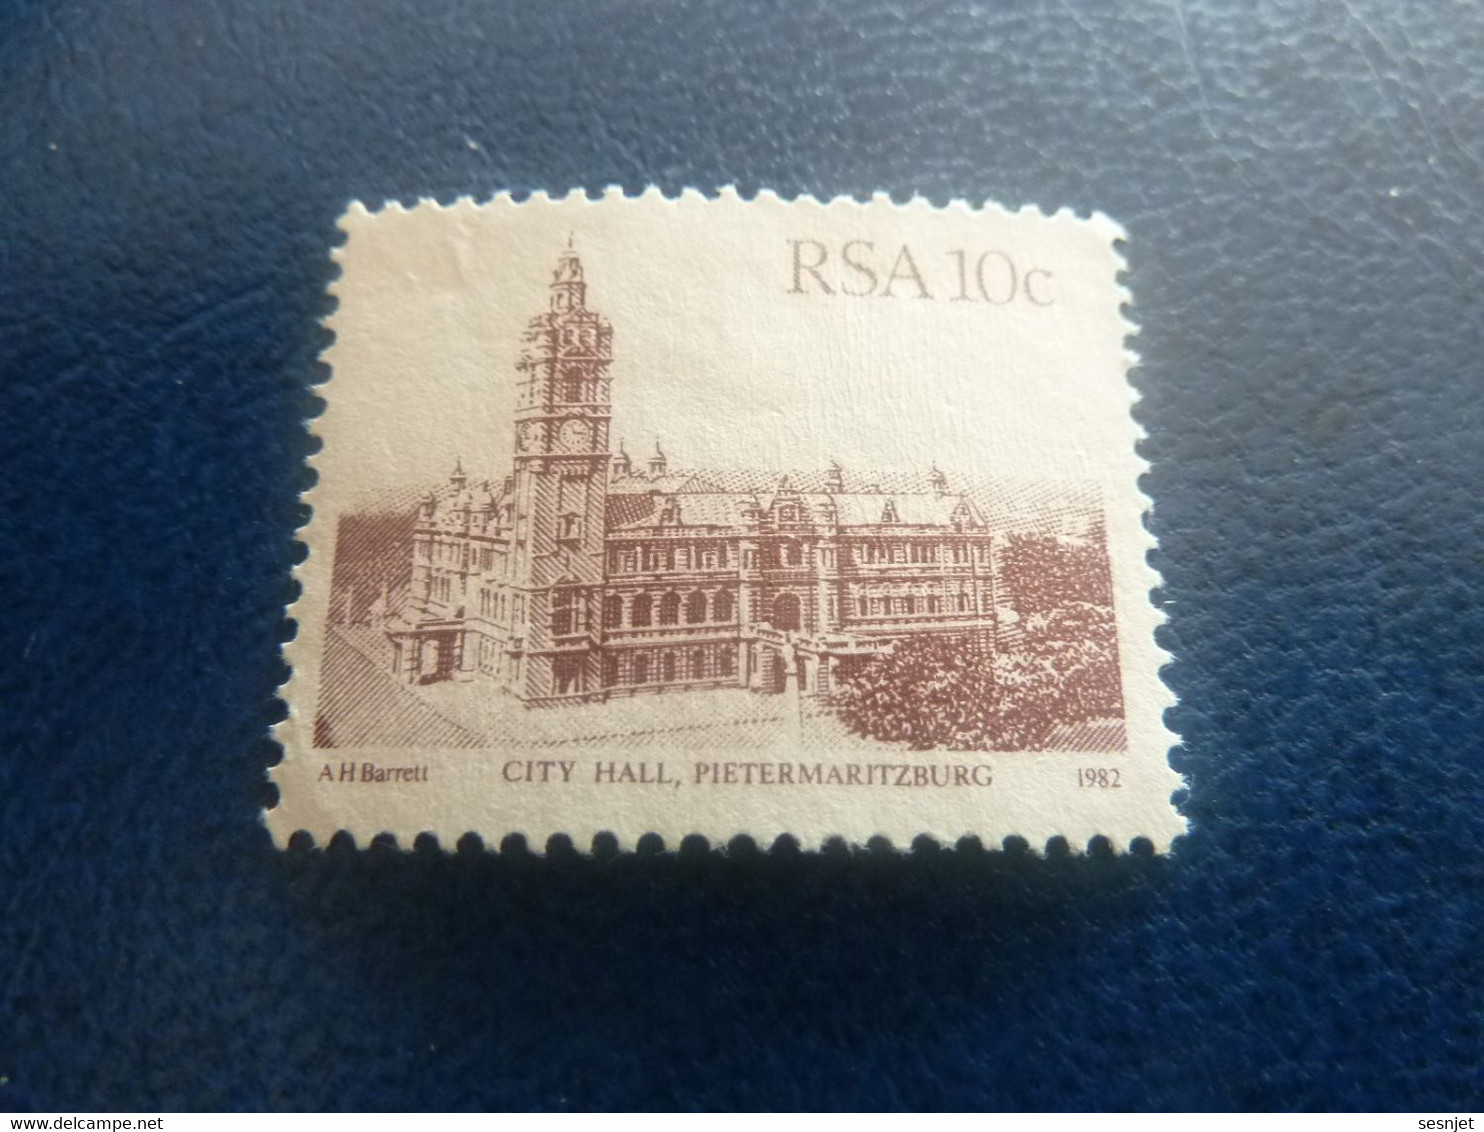 Rsa - City Hall - Pietermaritzburg - 10 C. - Brun Clair - Non Oblitéré - Année 1982 - - Used Stamps